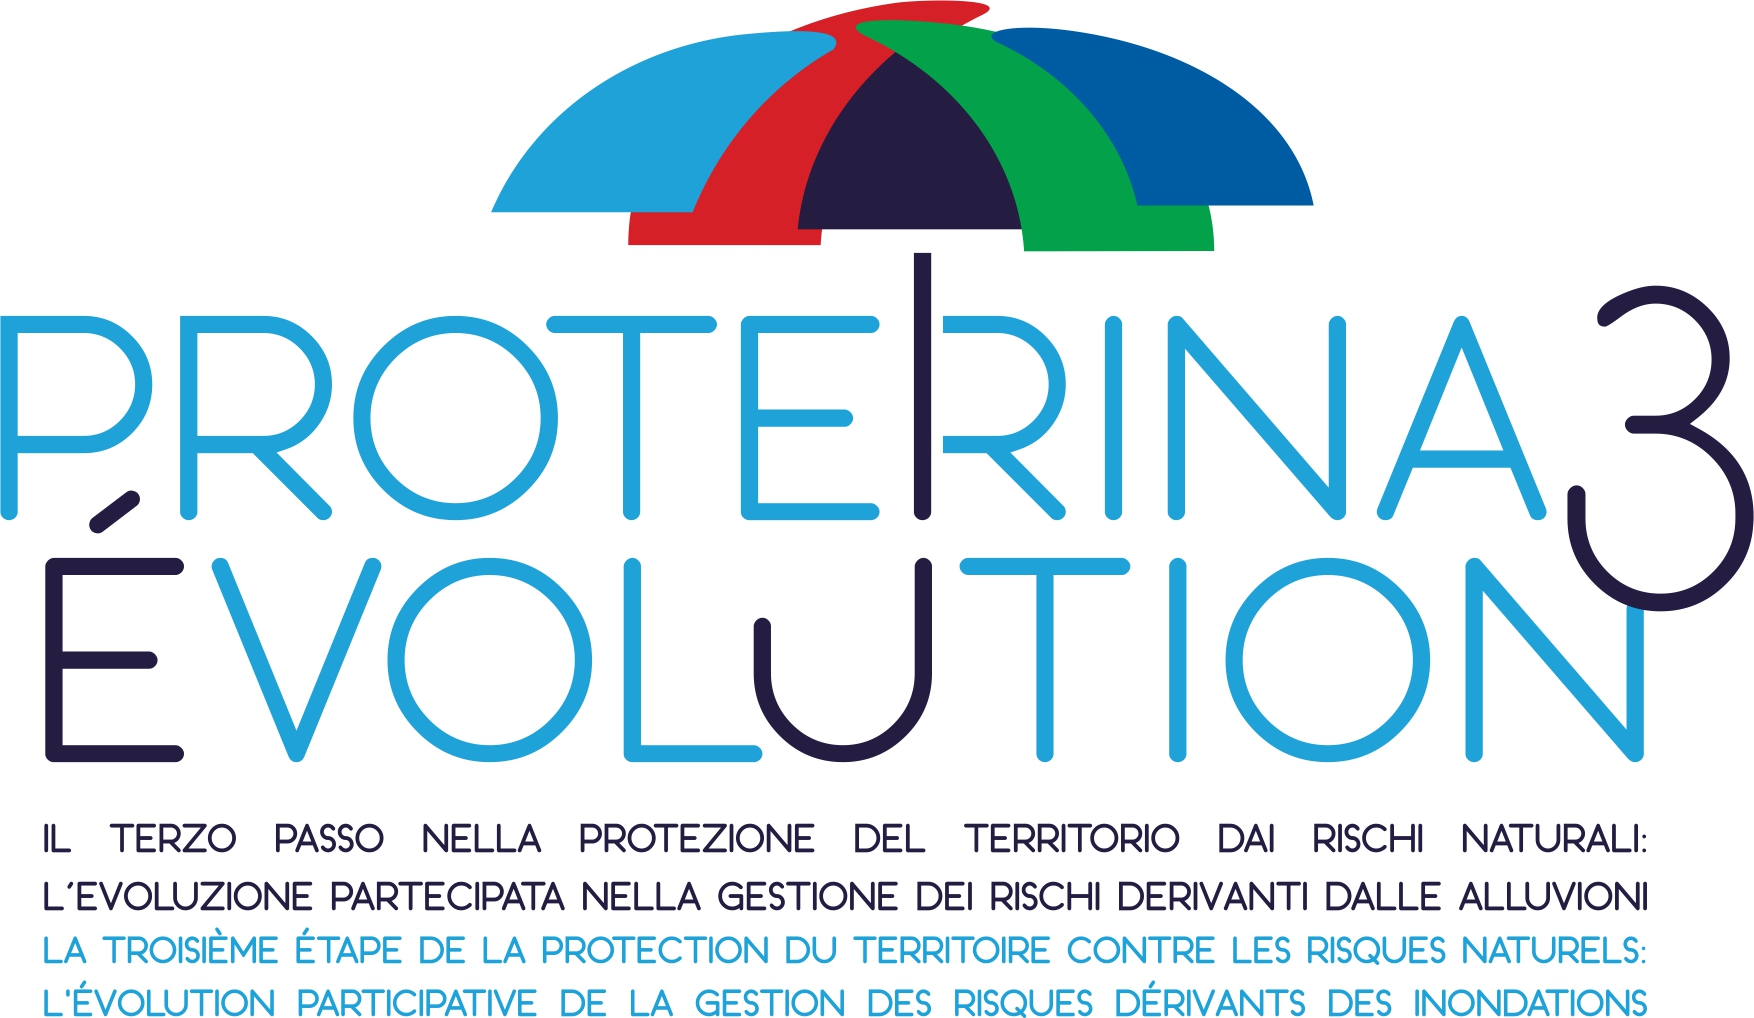 Proterina 3 - Interreg logo